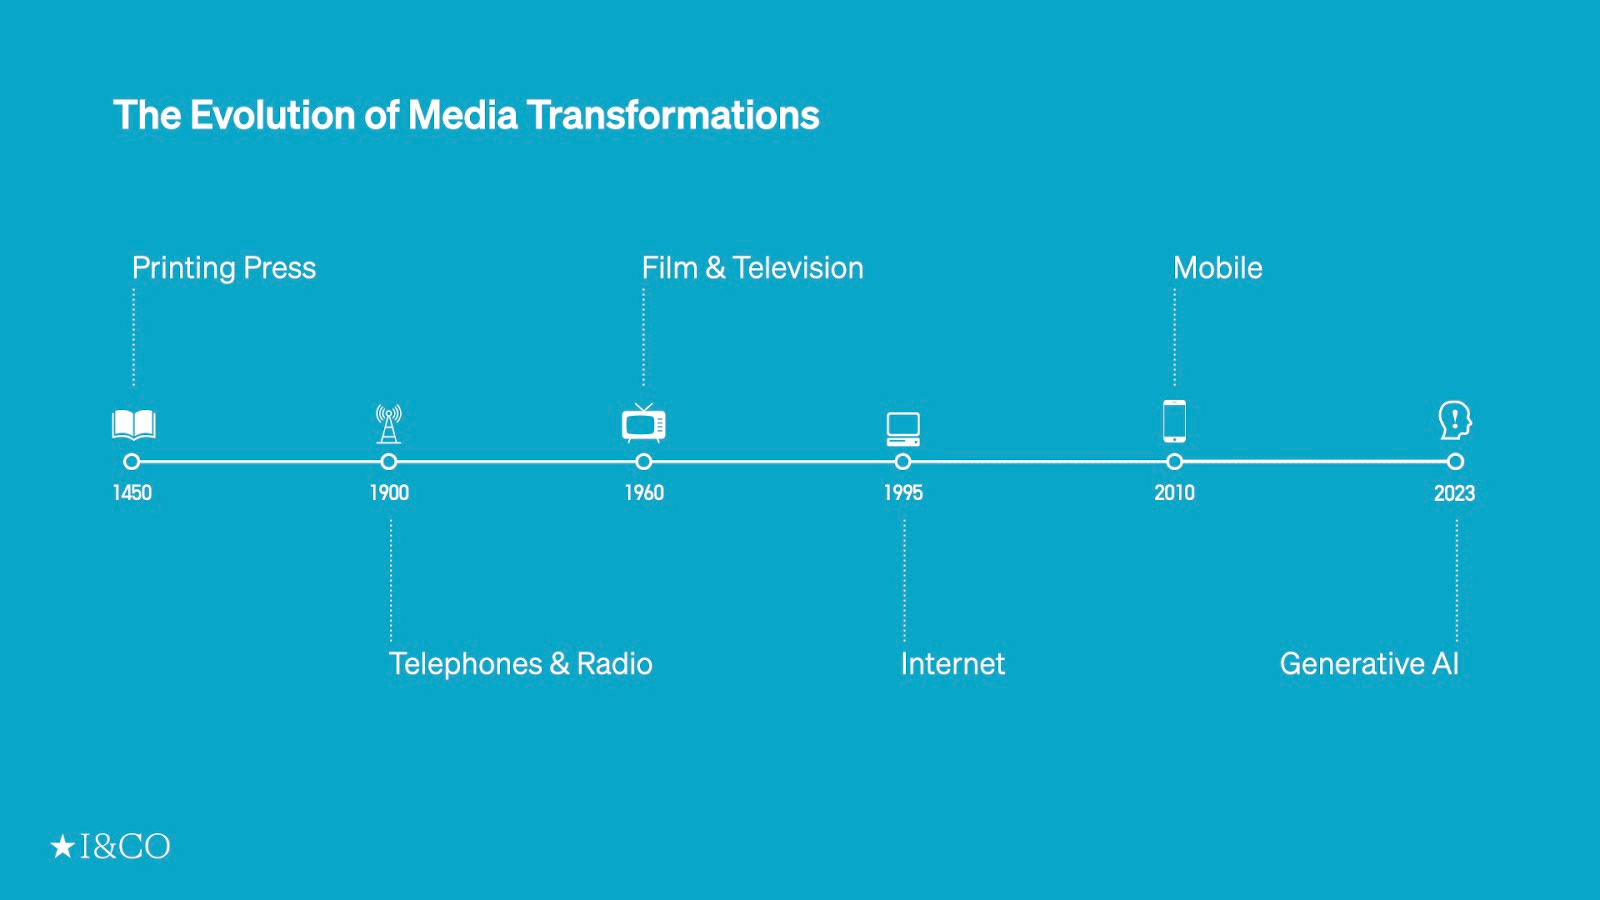 Evolution of Media